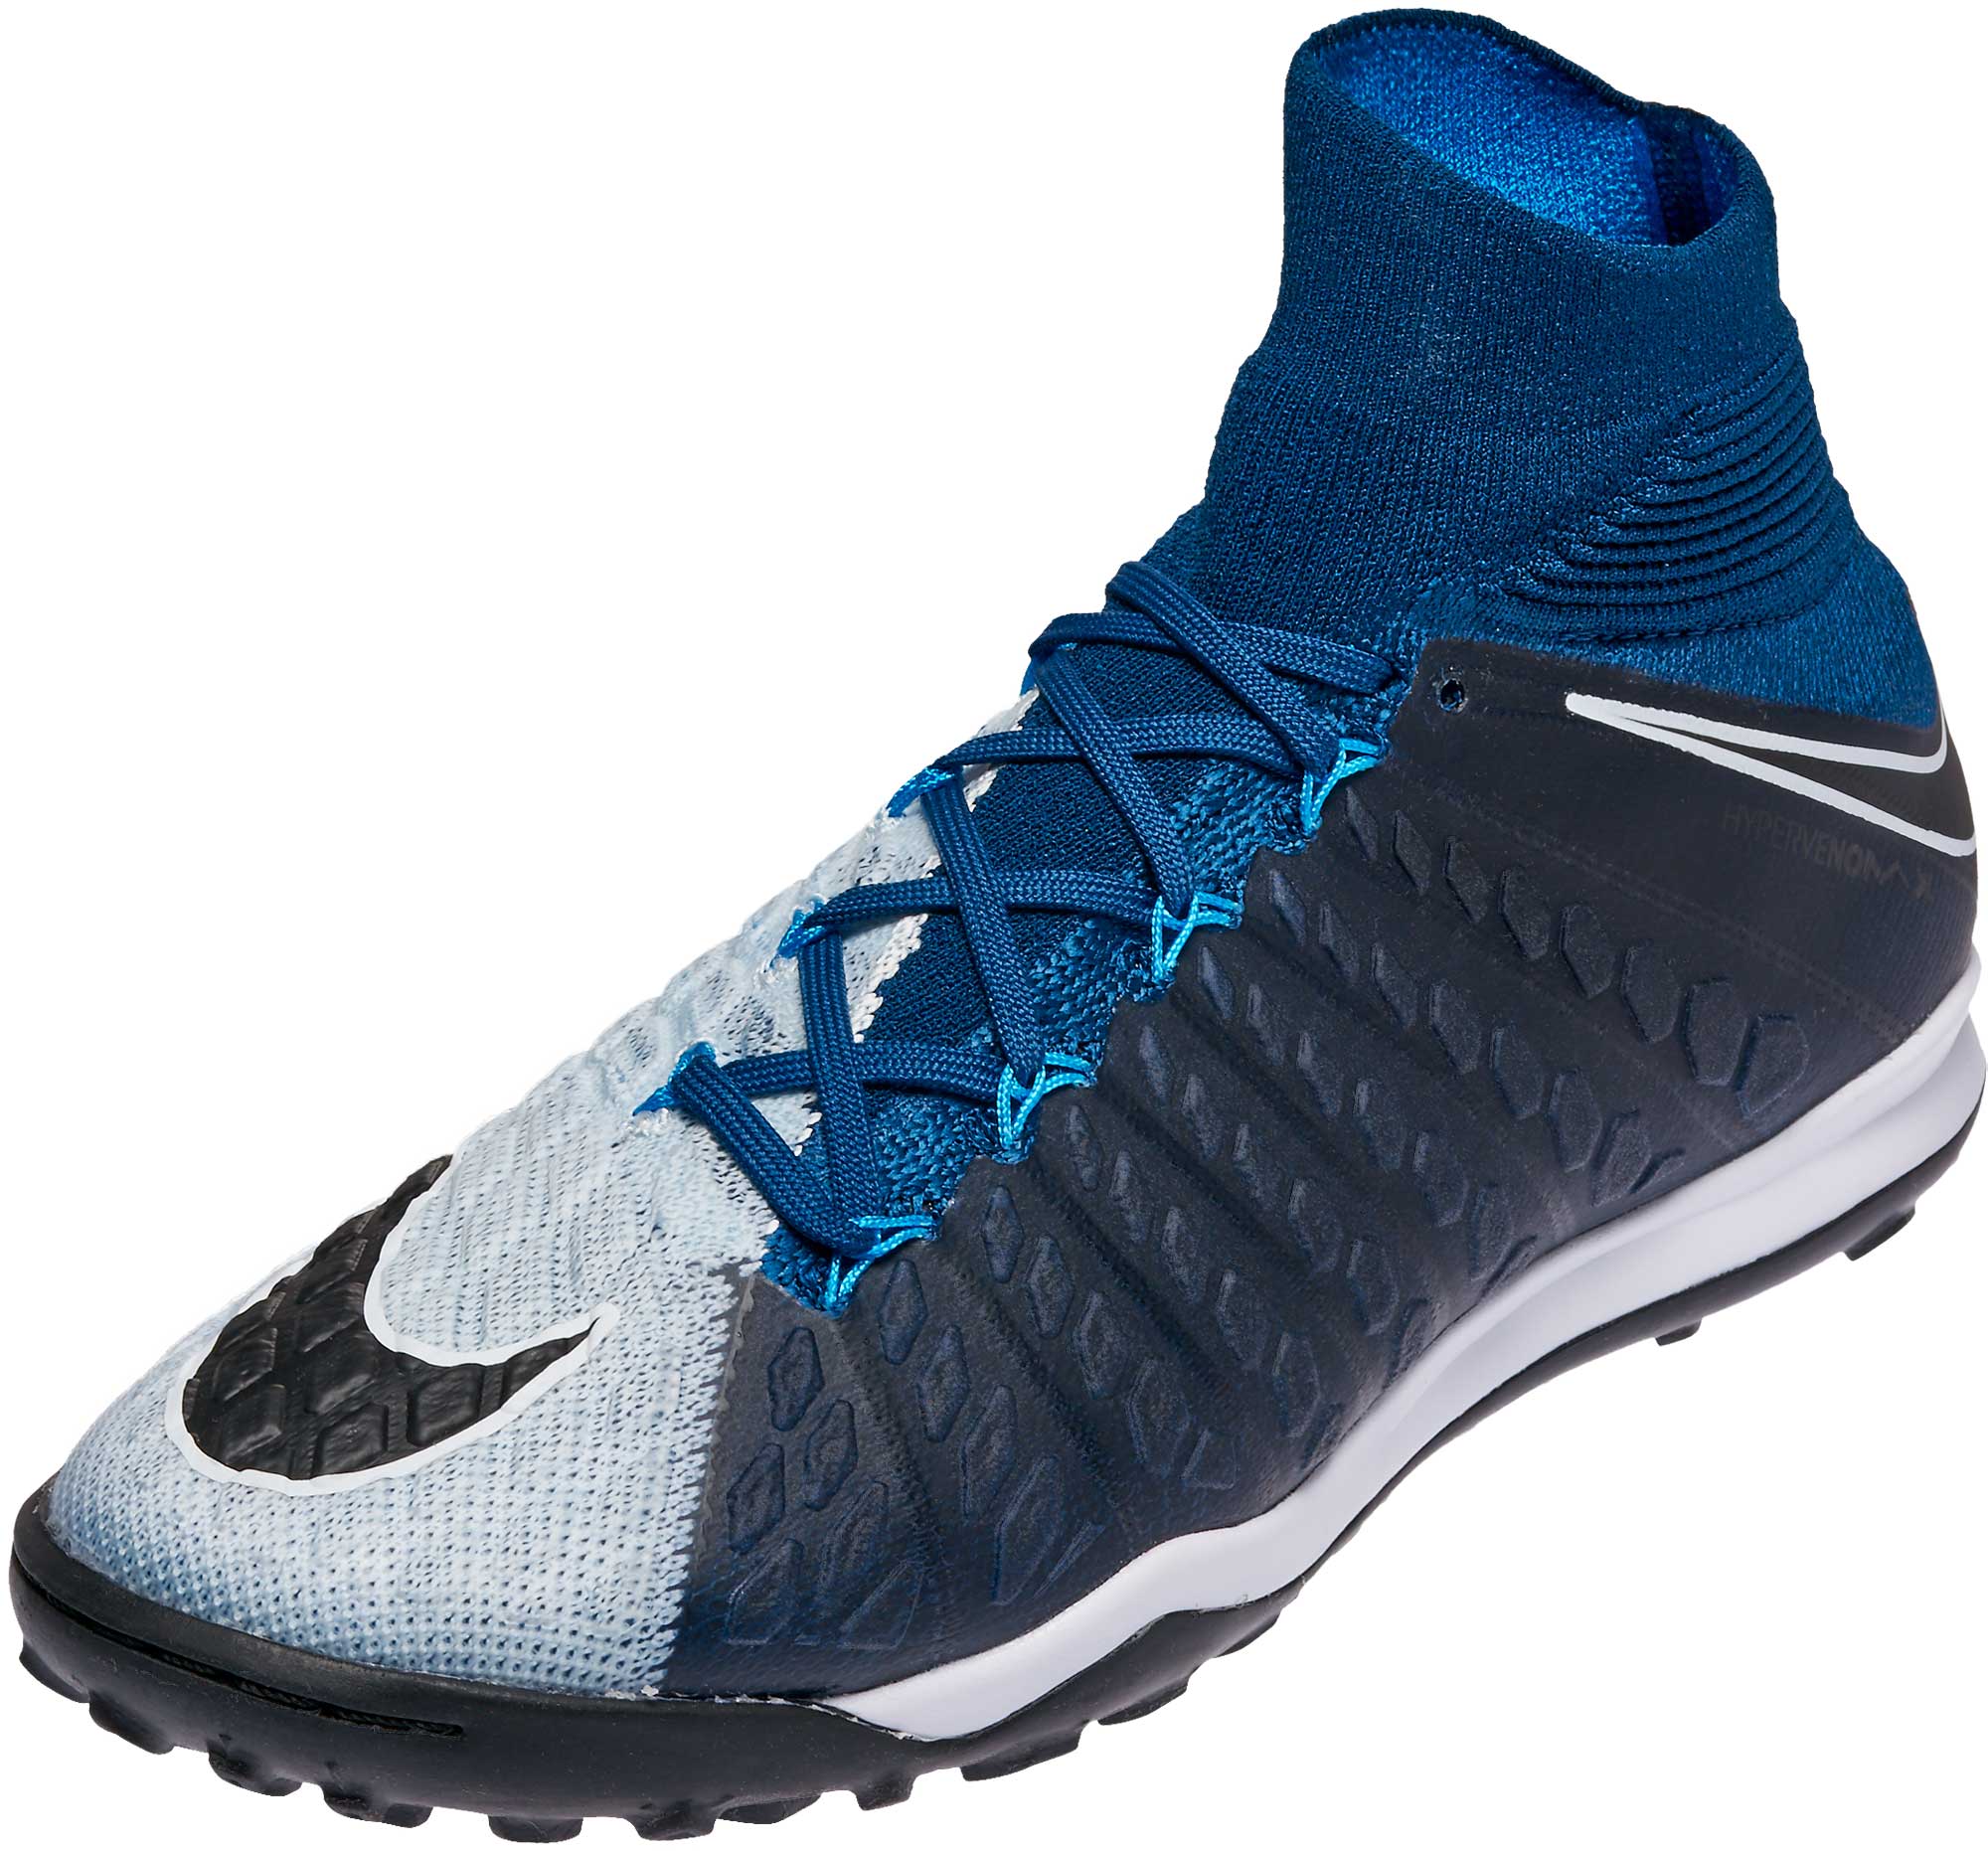 Nike HypervenomX II DF TF Soccer Shoes - Blue & Black - Soccer Master